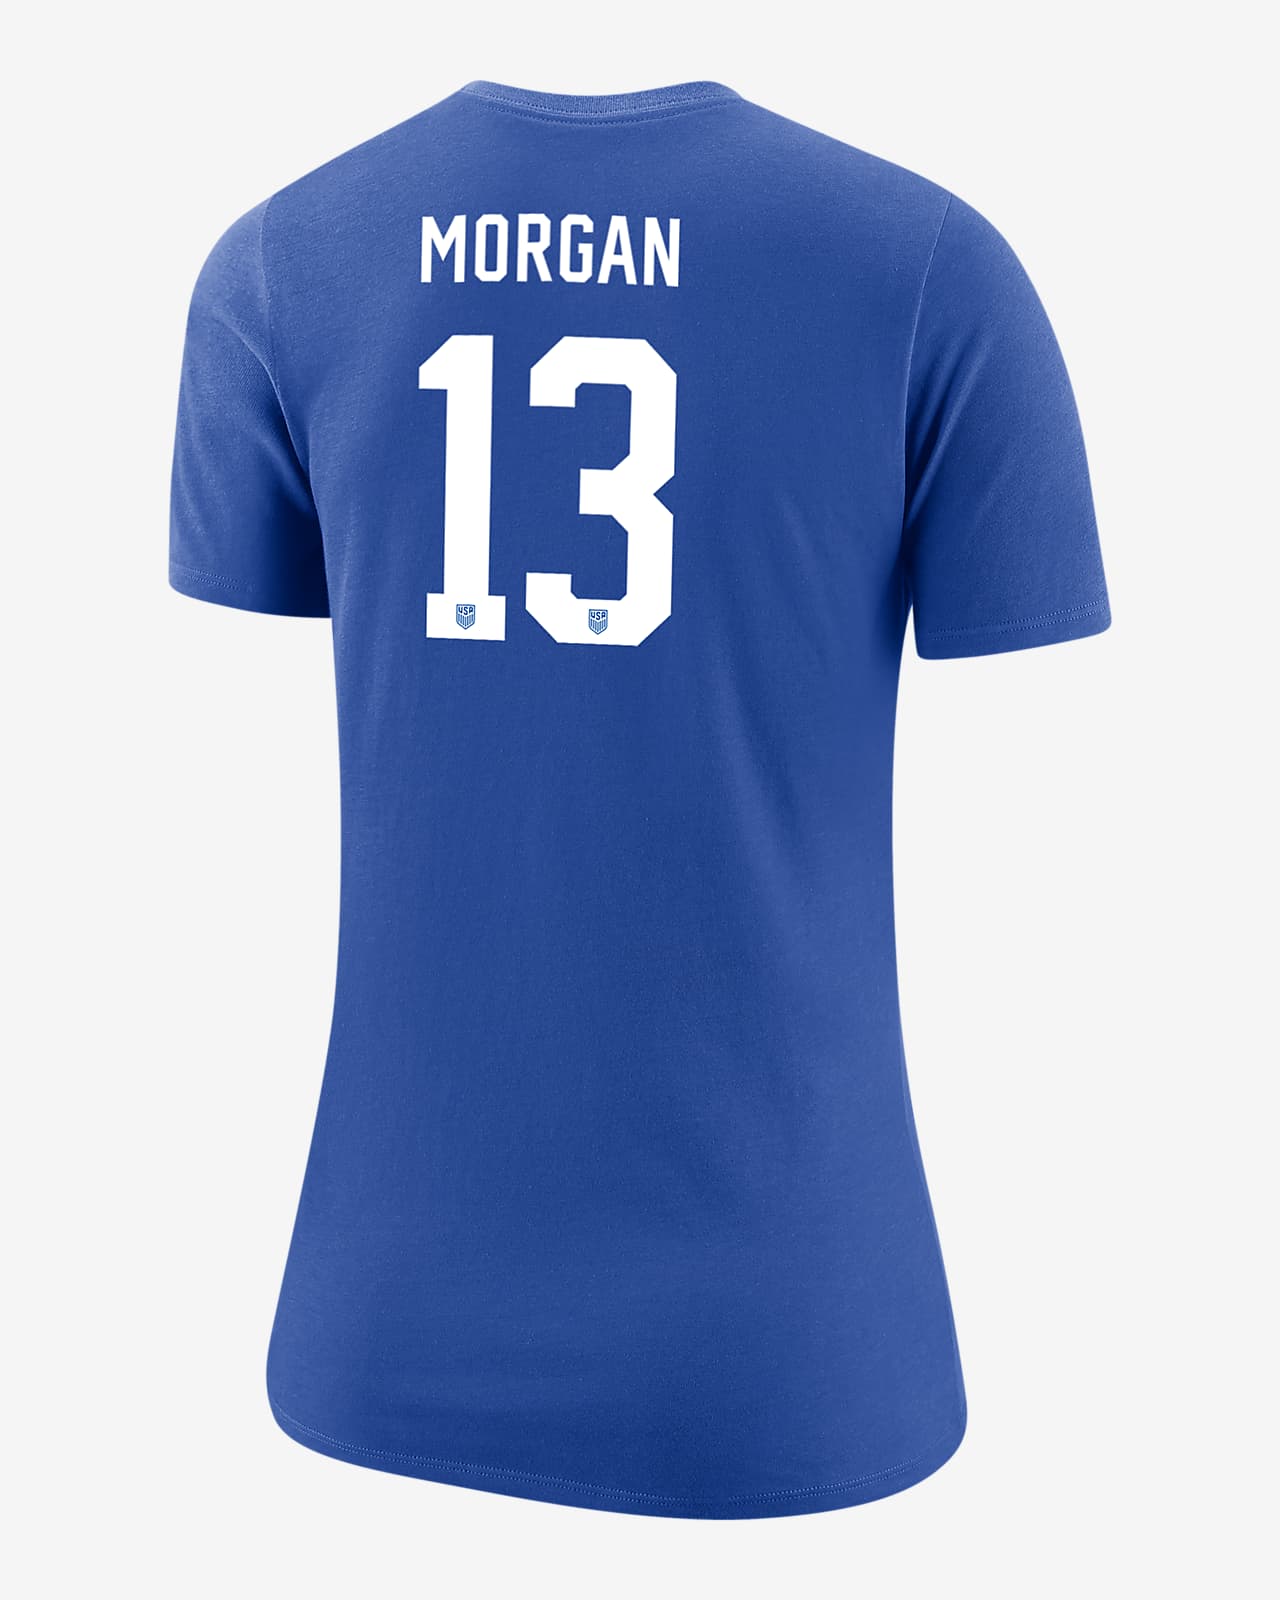 Playera de fútbol Nike para mujer Alex Morgan USWNT.